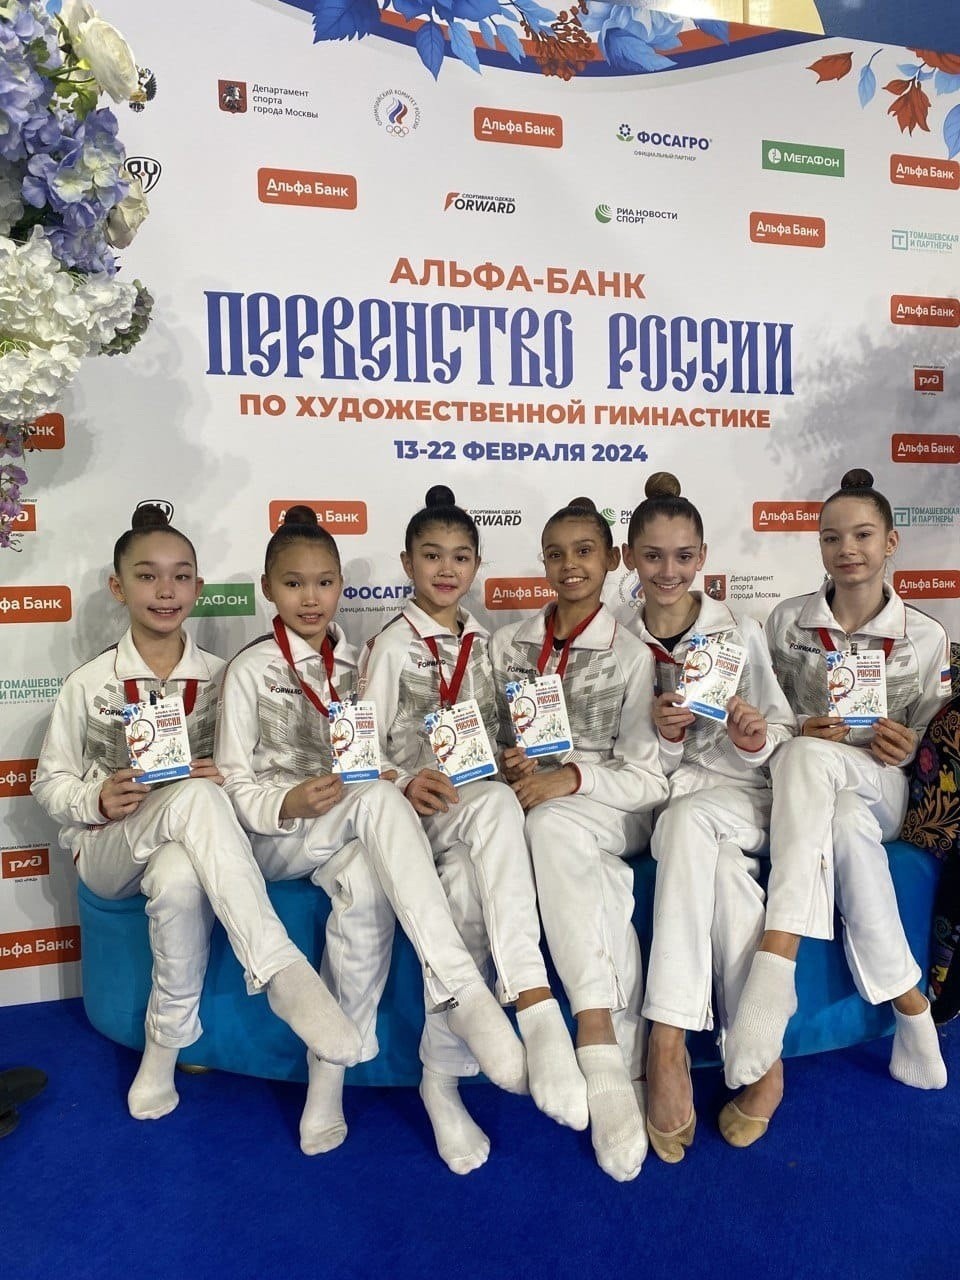 Сегодня гимнастки из Калмыкии принимают участие в первенстве России по художественной гимнастике во дворце Ирины Винер в Москве